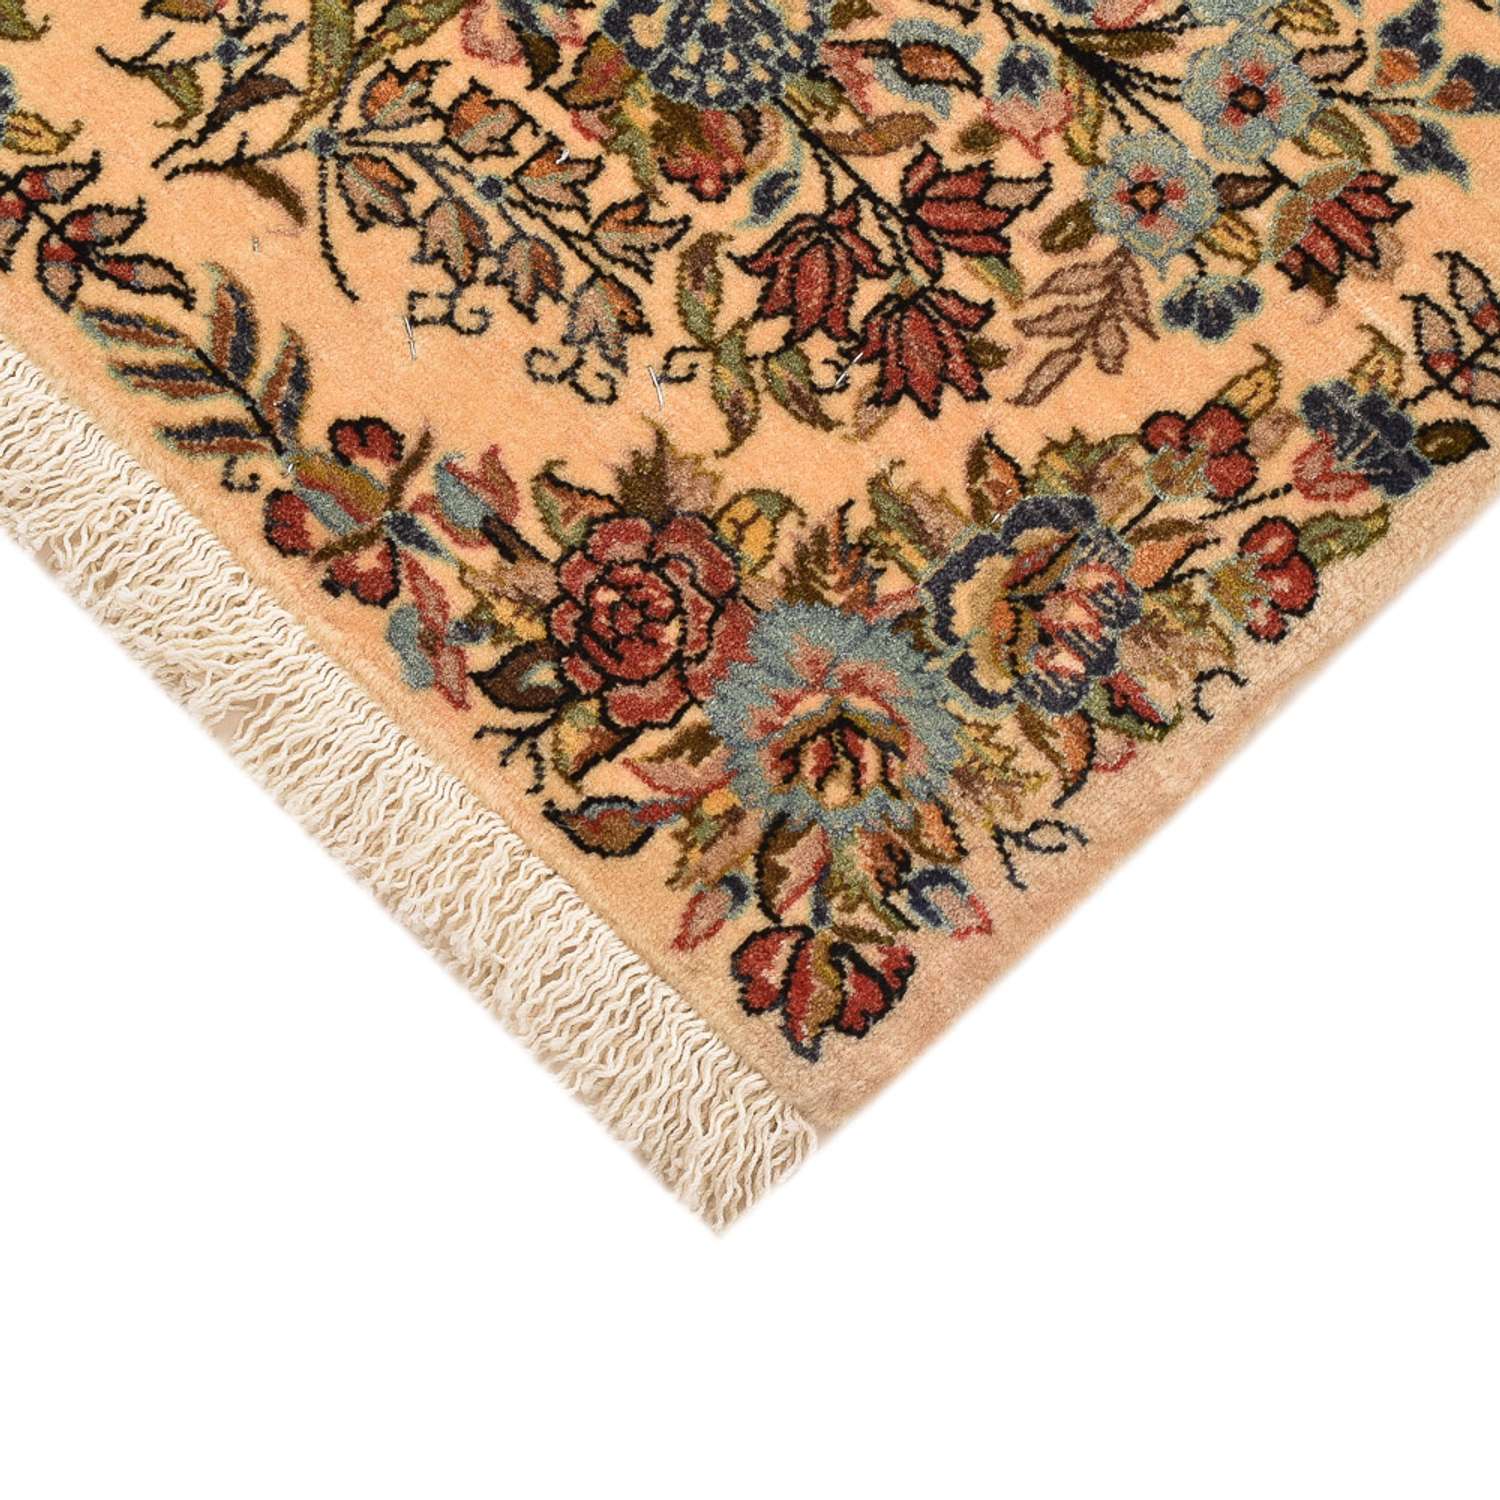 Perzisch tapijt - Royal - 54 x 52 cm - veelkleurig